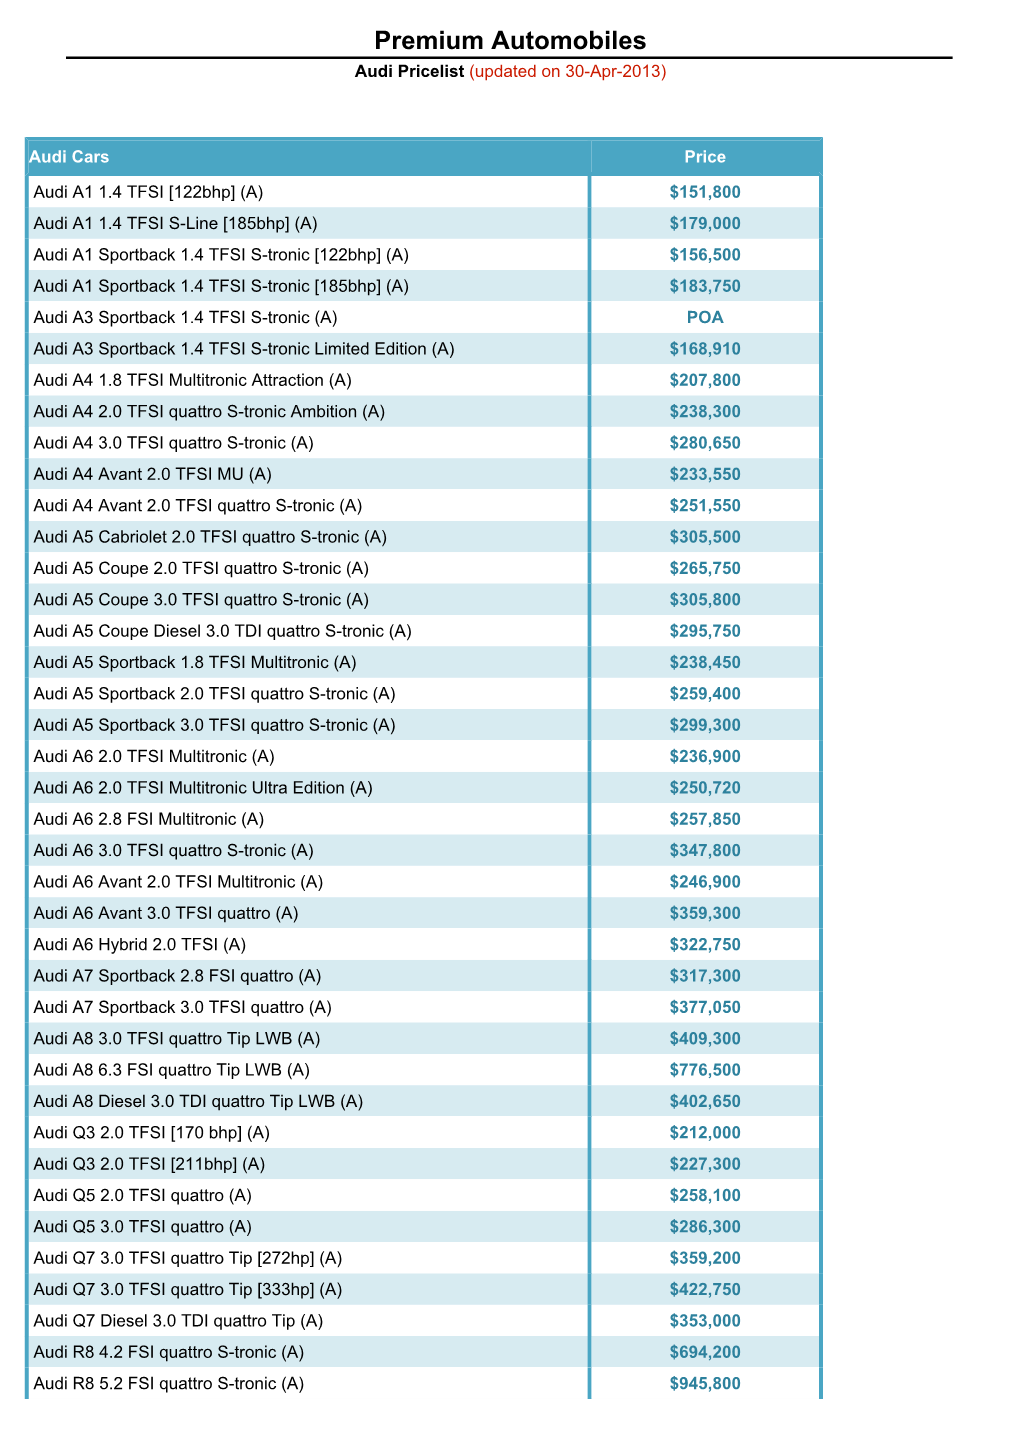 Premium Automobiles Audi Pricelist (Updated on 30-Apr-2013)